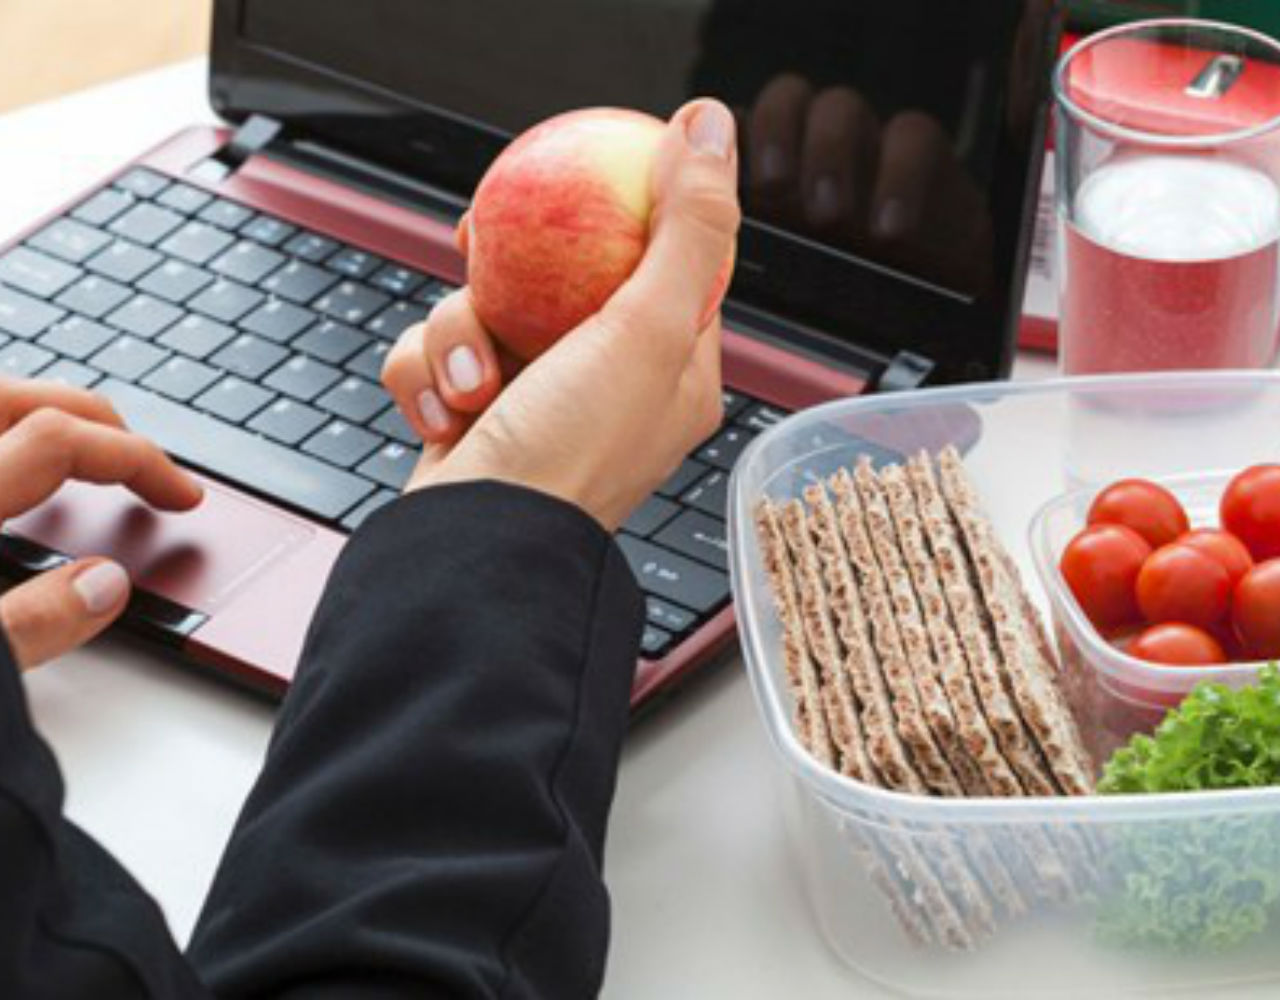 Εύκολα tips για να τρώμε πιο υγιεινά στη δουλειά